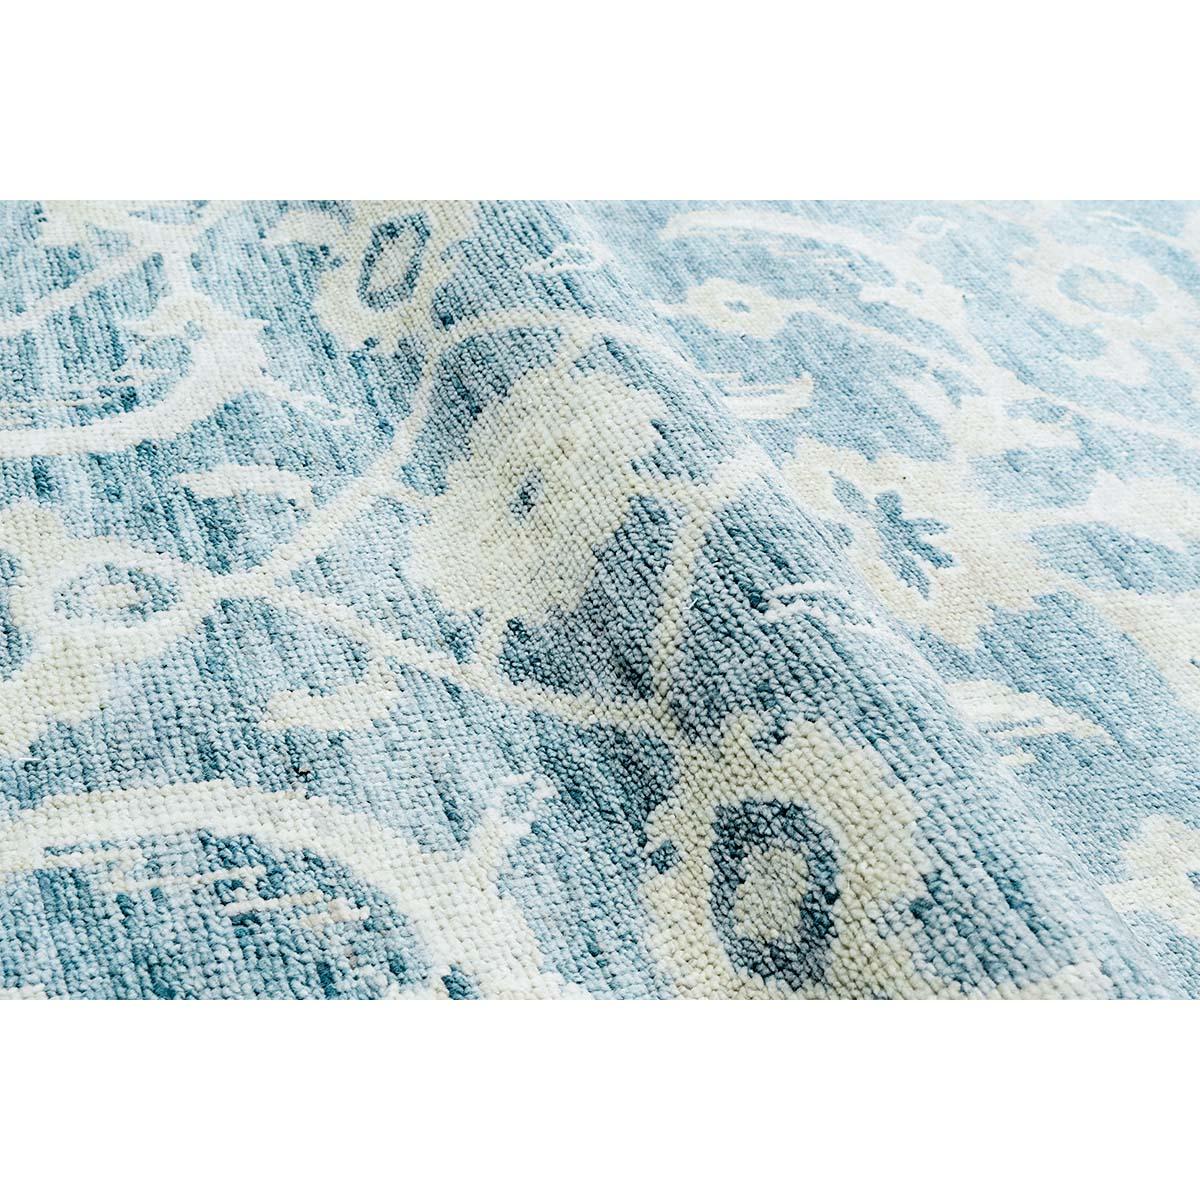 Cet élégant tapis noué à la main en provenance d'Inde. C'est une pièce douce et luxueuse tissée à partir des laines et des cotons les plus fins.
